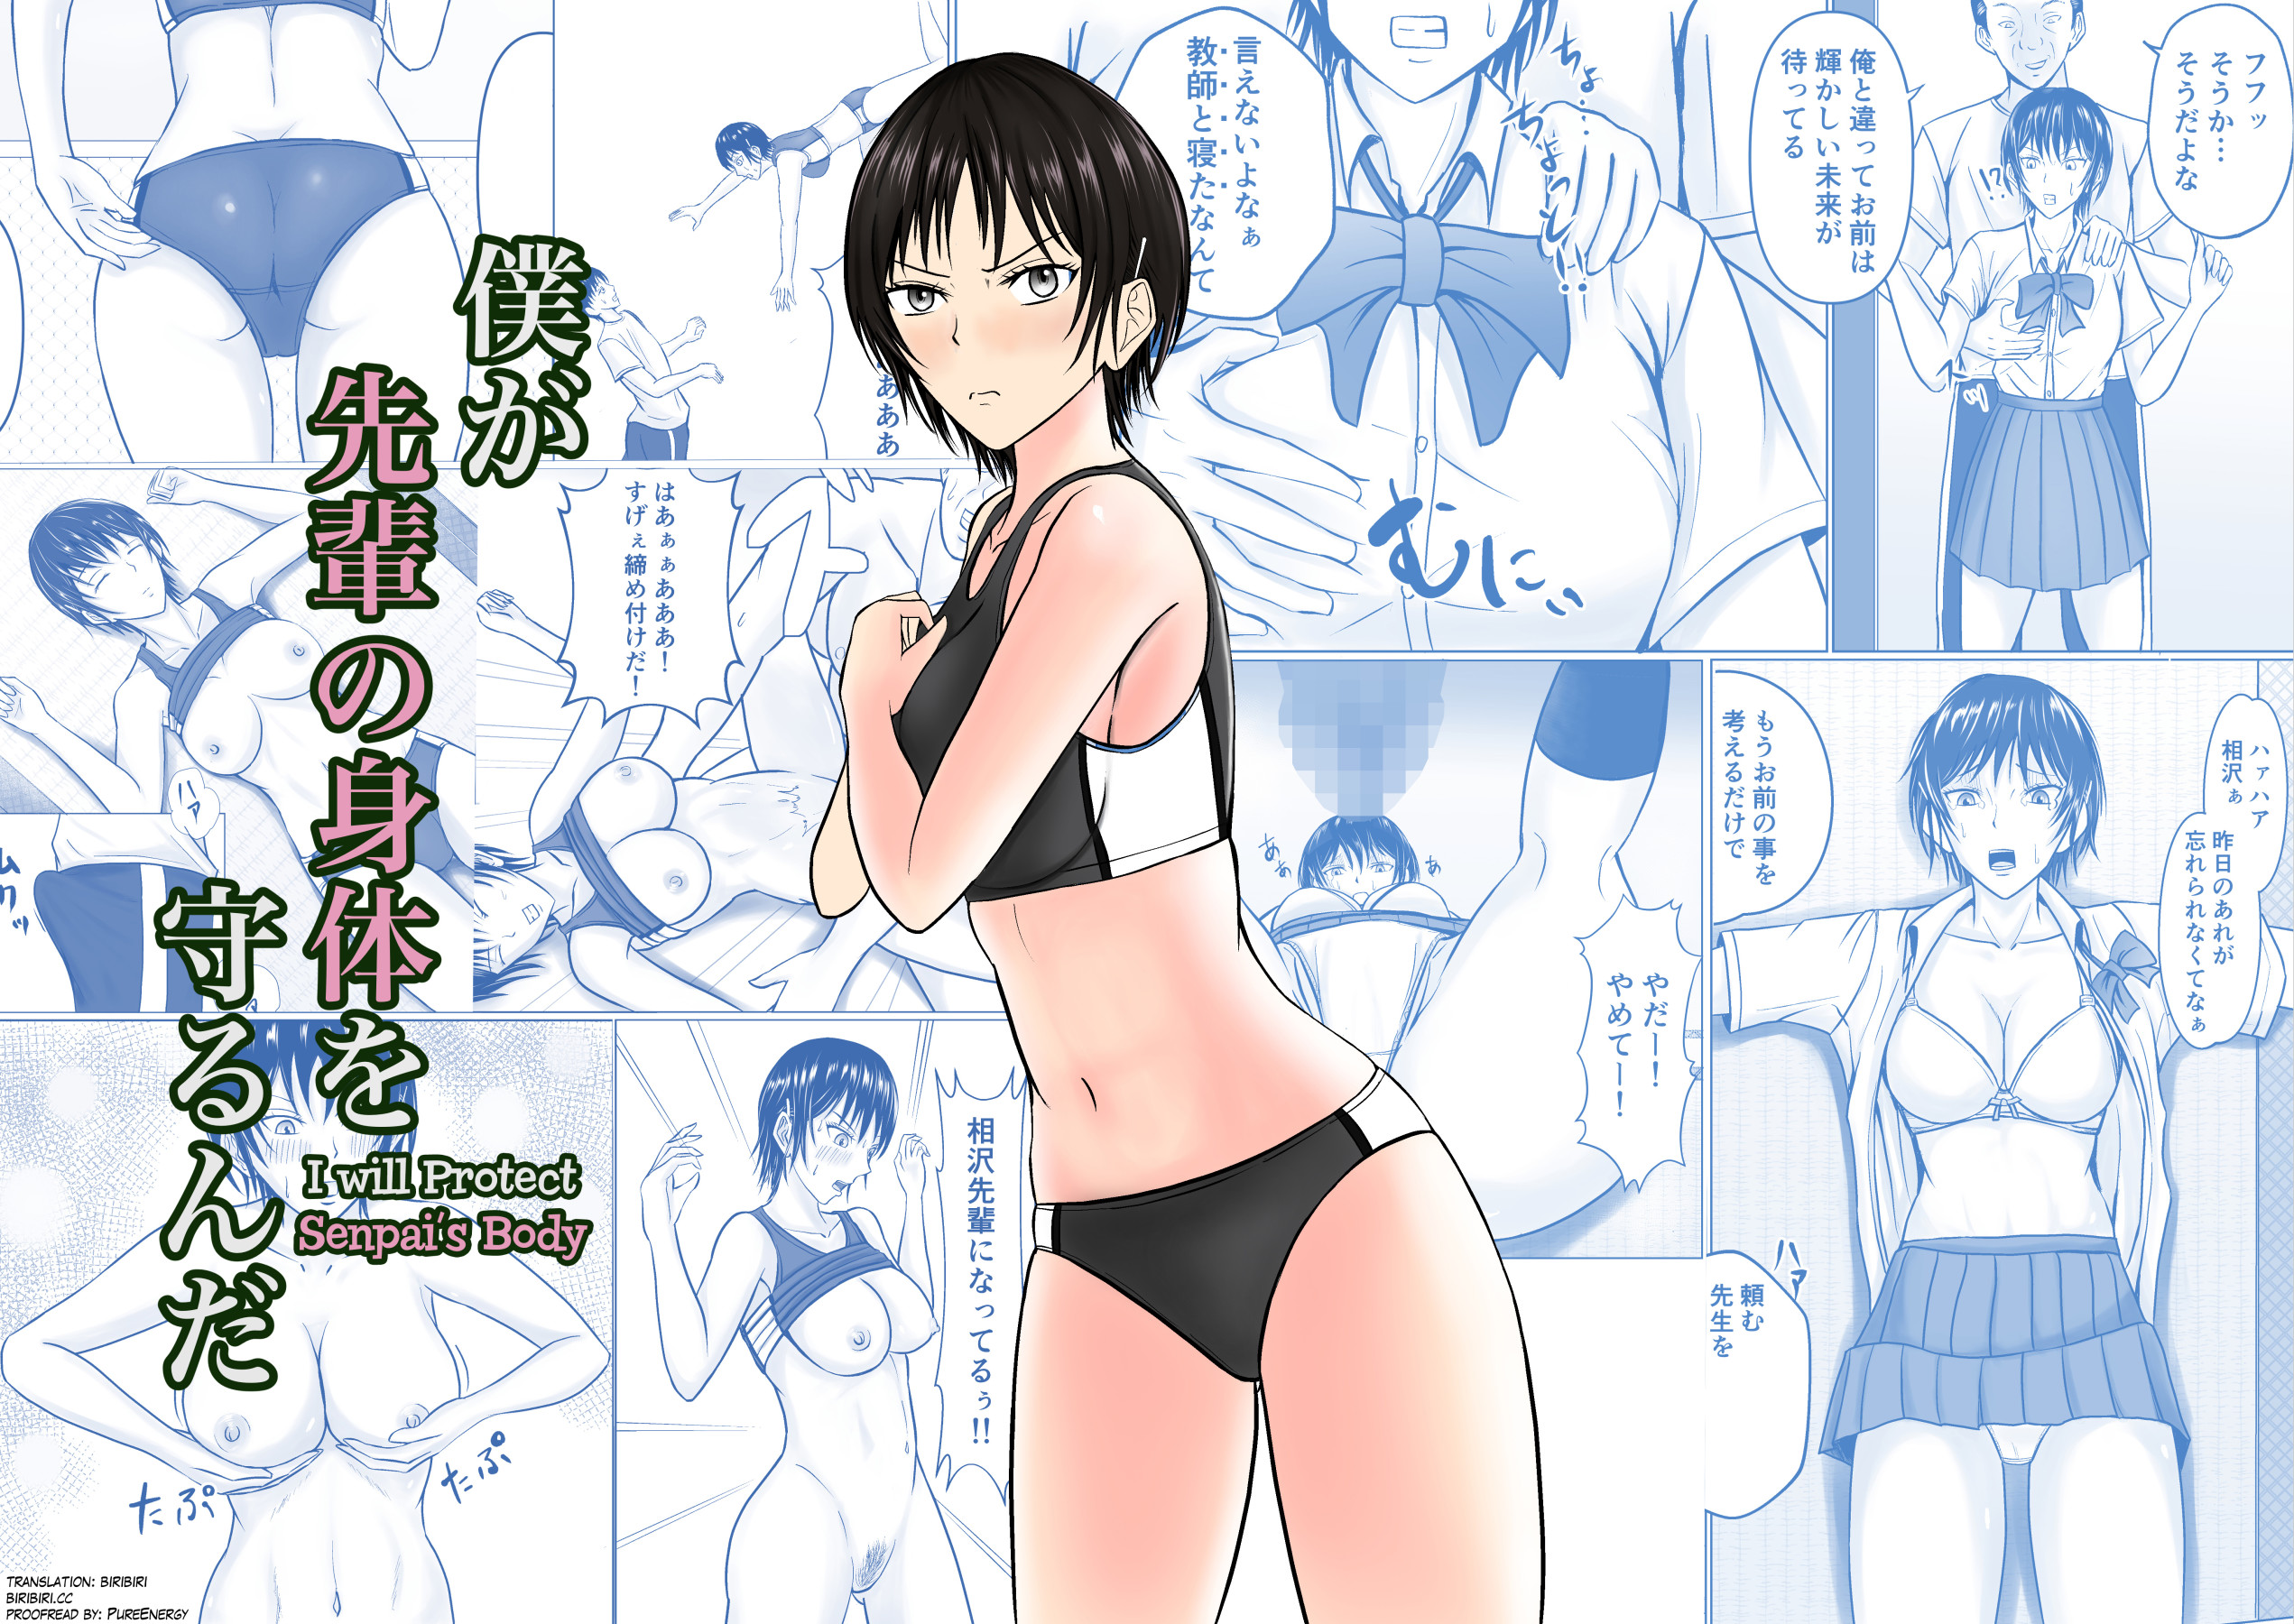 Hentai Manga Comic-I Will Protect Senpai's Body-Read-1